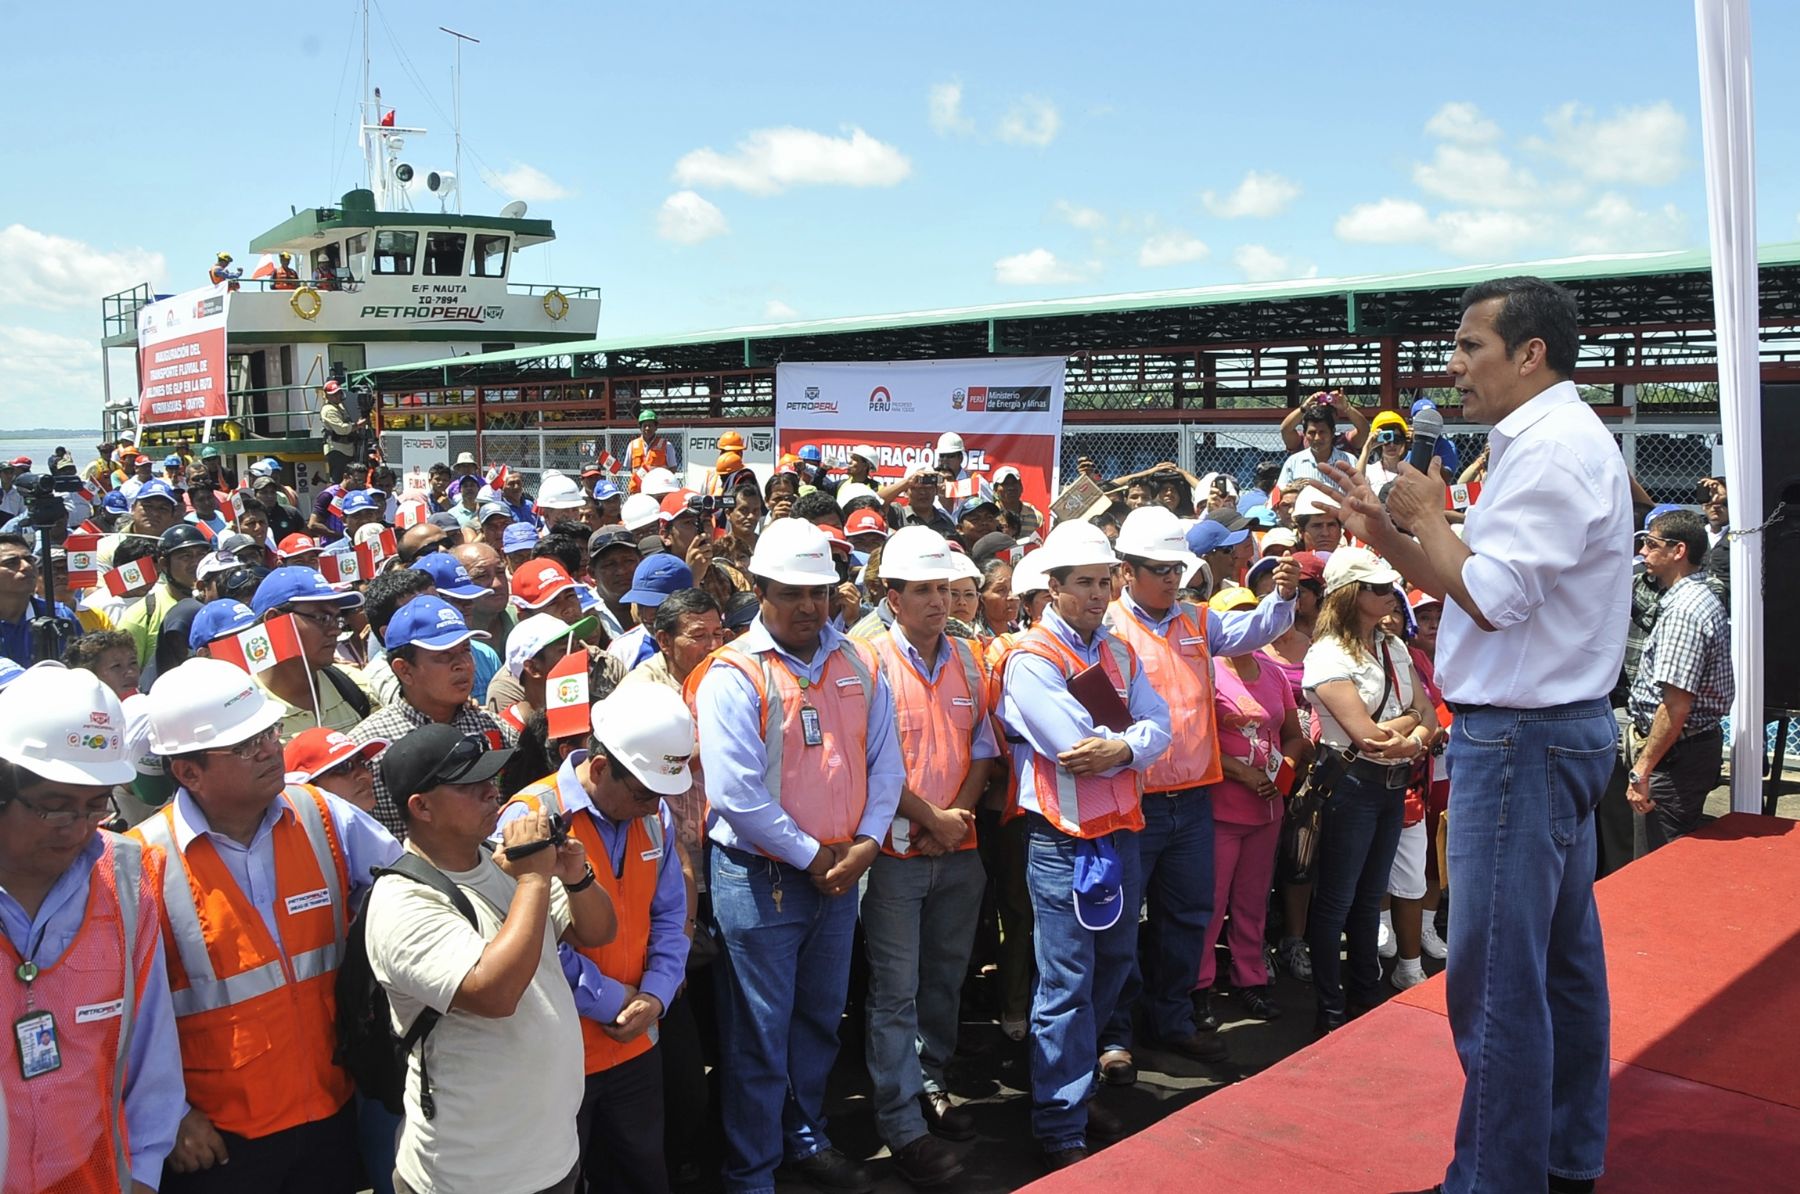 El Presidente Ollanta Humala inauguró el servicio de transporte fluvial de gas licuado de petróleo (GLP), a través de la barcaza “Samiria” de Petroperú, en la ciudad de Iquitos, región Loreto. ANDINA/Prensa Presidencia